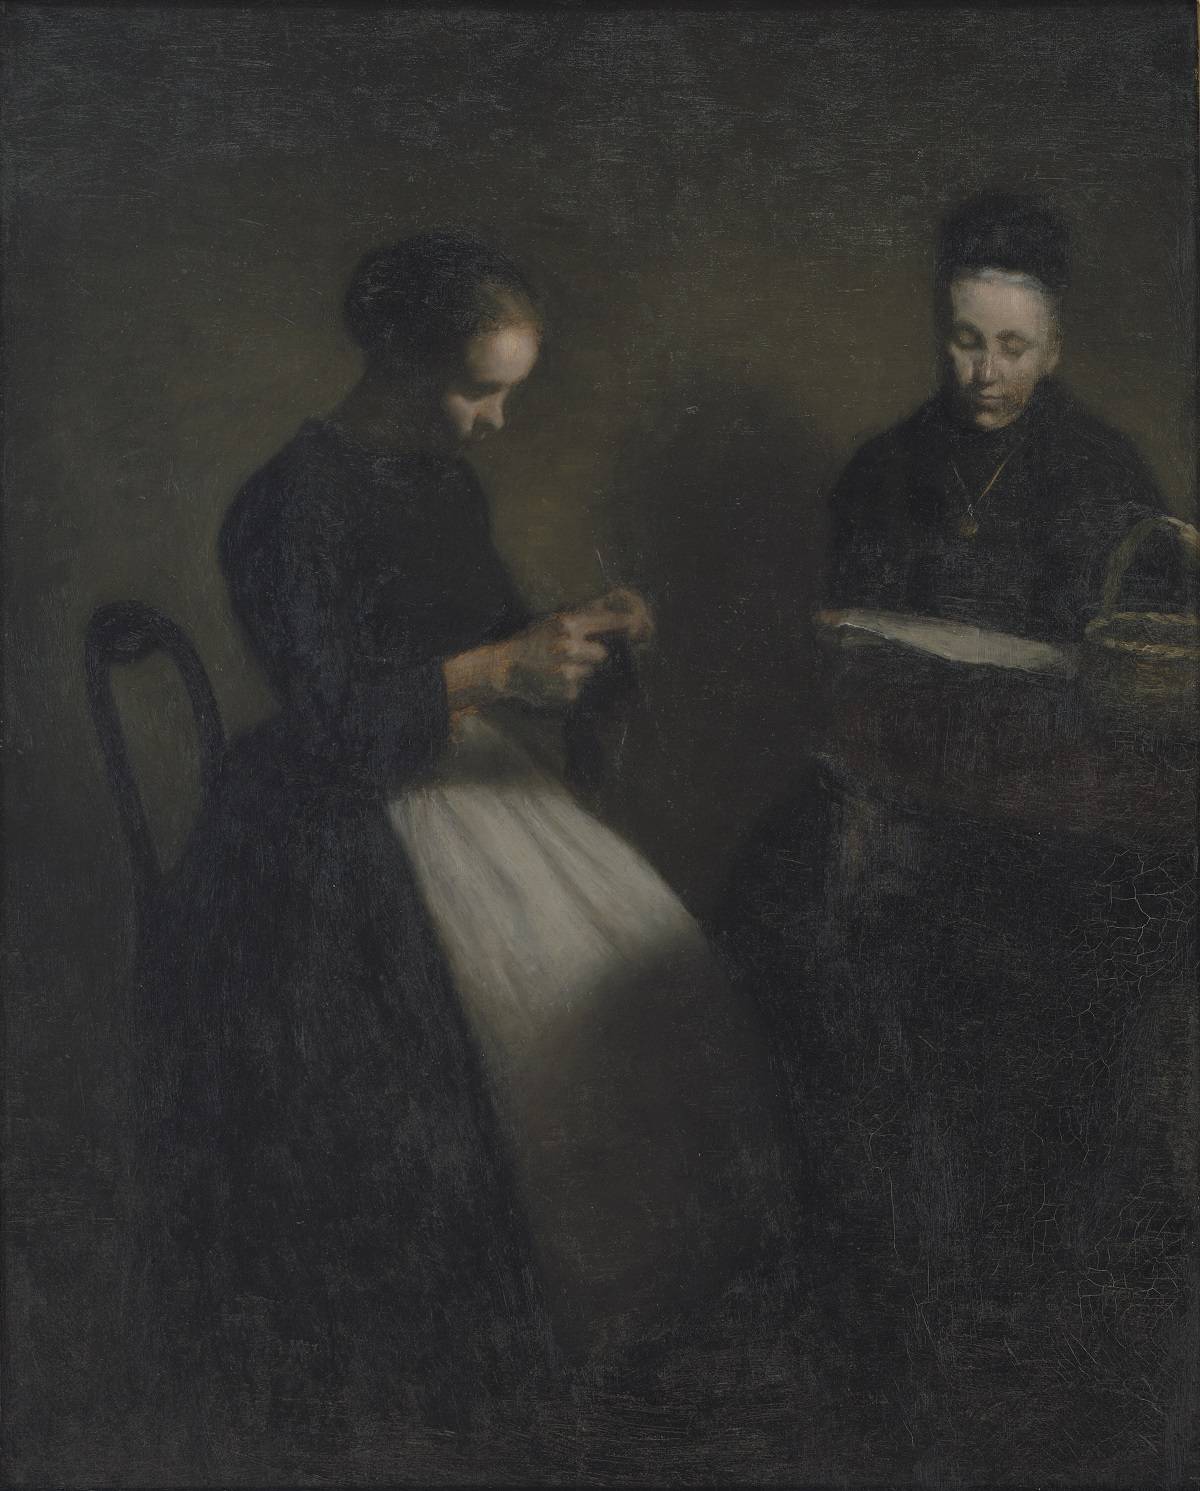 Vilhelm Hammershøi, Wieczorne wnętrze. Matka i żona artysty, 1891, Statens Museum for Kunst, National Gallery of Denmark